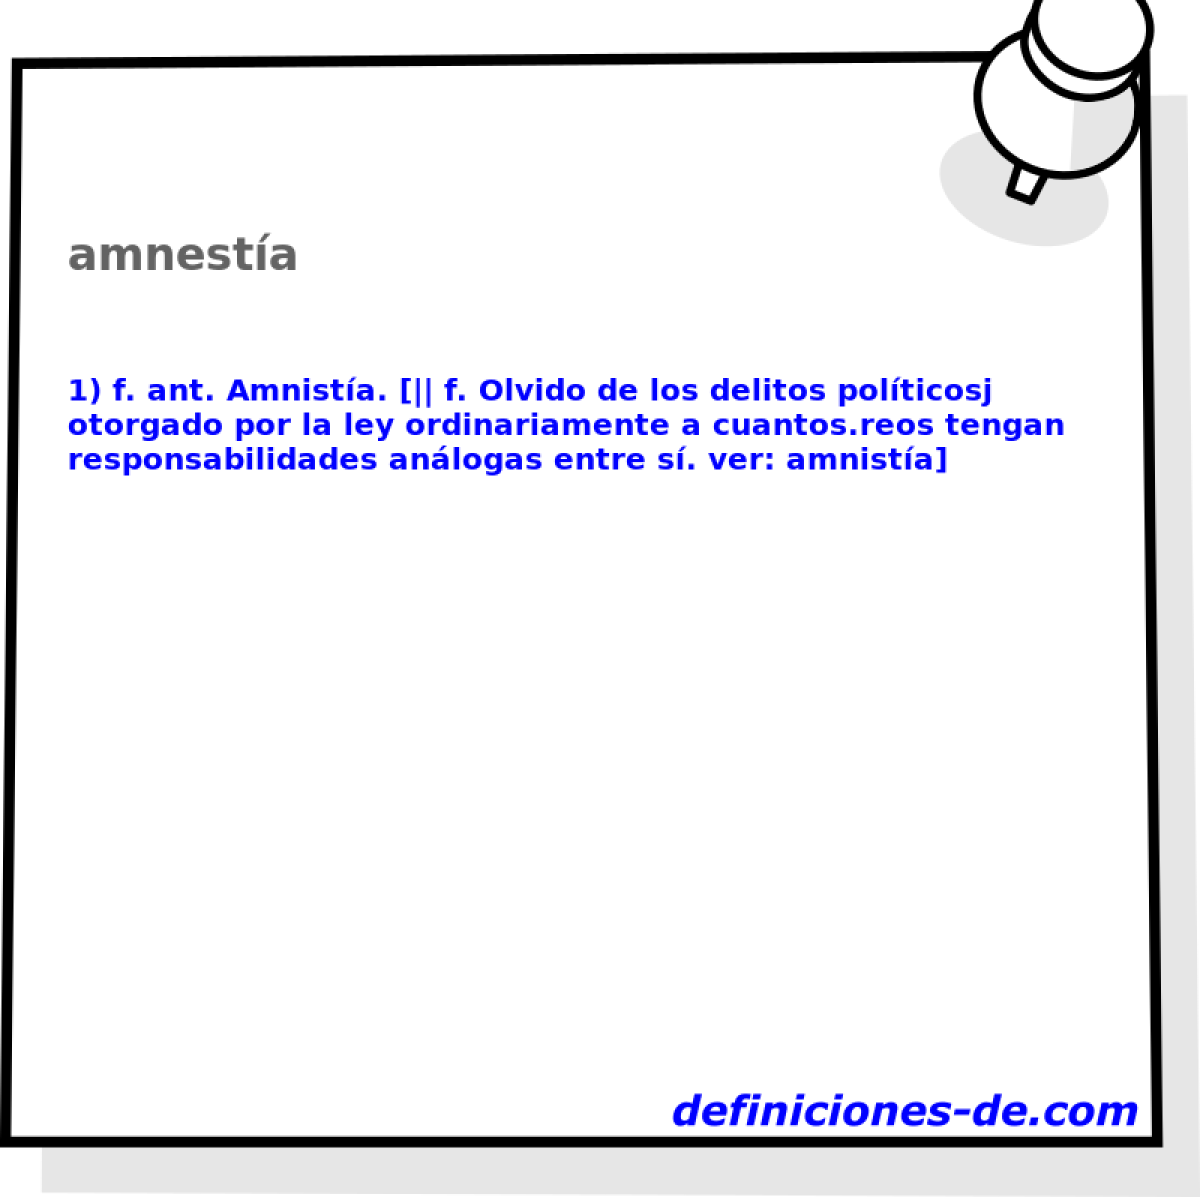 amnesta 